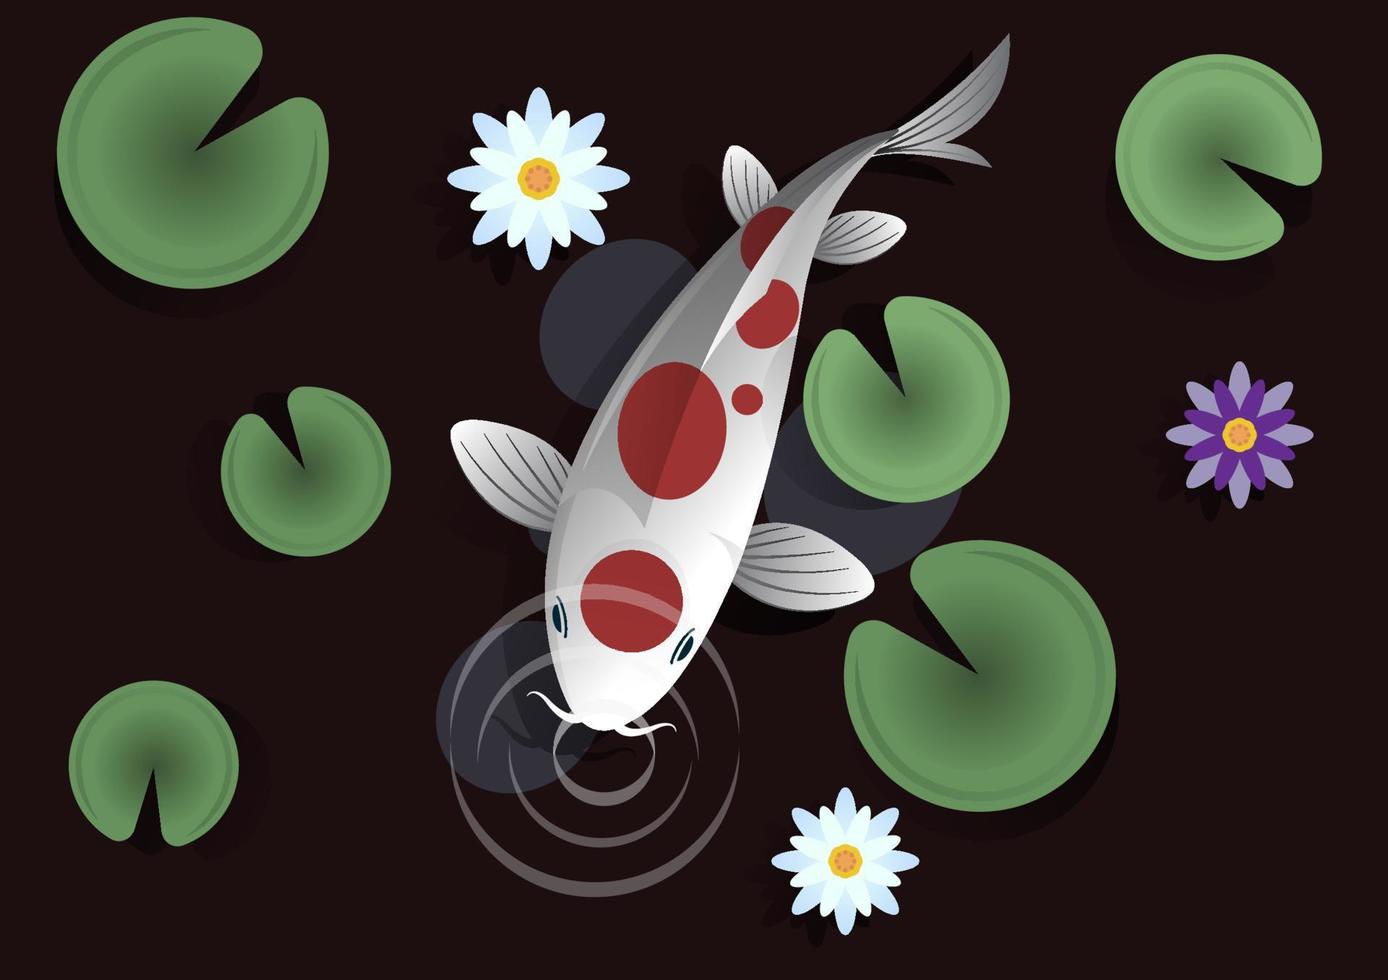 i pesci koi bianchi a macchie rosse vengono ad annusare l'aria nello stagno dei pesci. all'interno dello stagno ci sono foglie di loto e bellissimi fiori di loto. illustrazione di stile piatto del fumetto di vettore